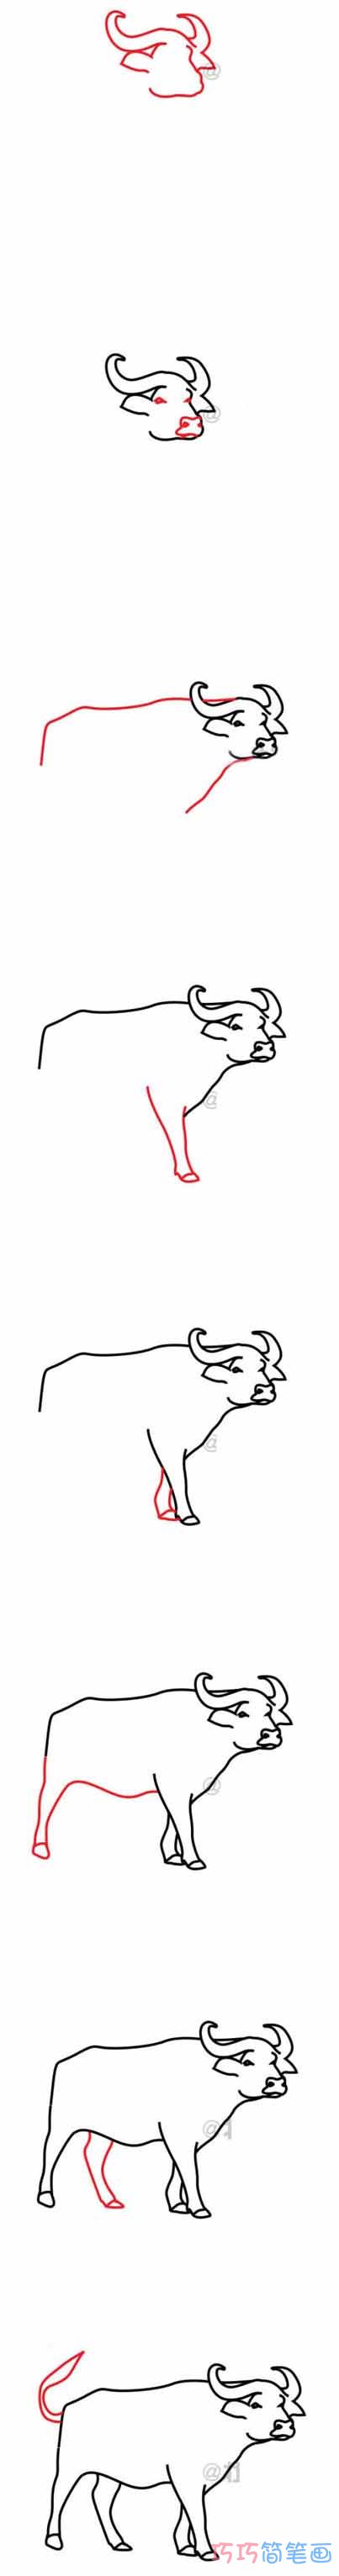 水牛怎么画好看可爱_带步骤图水牛简笔画图片